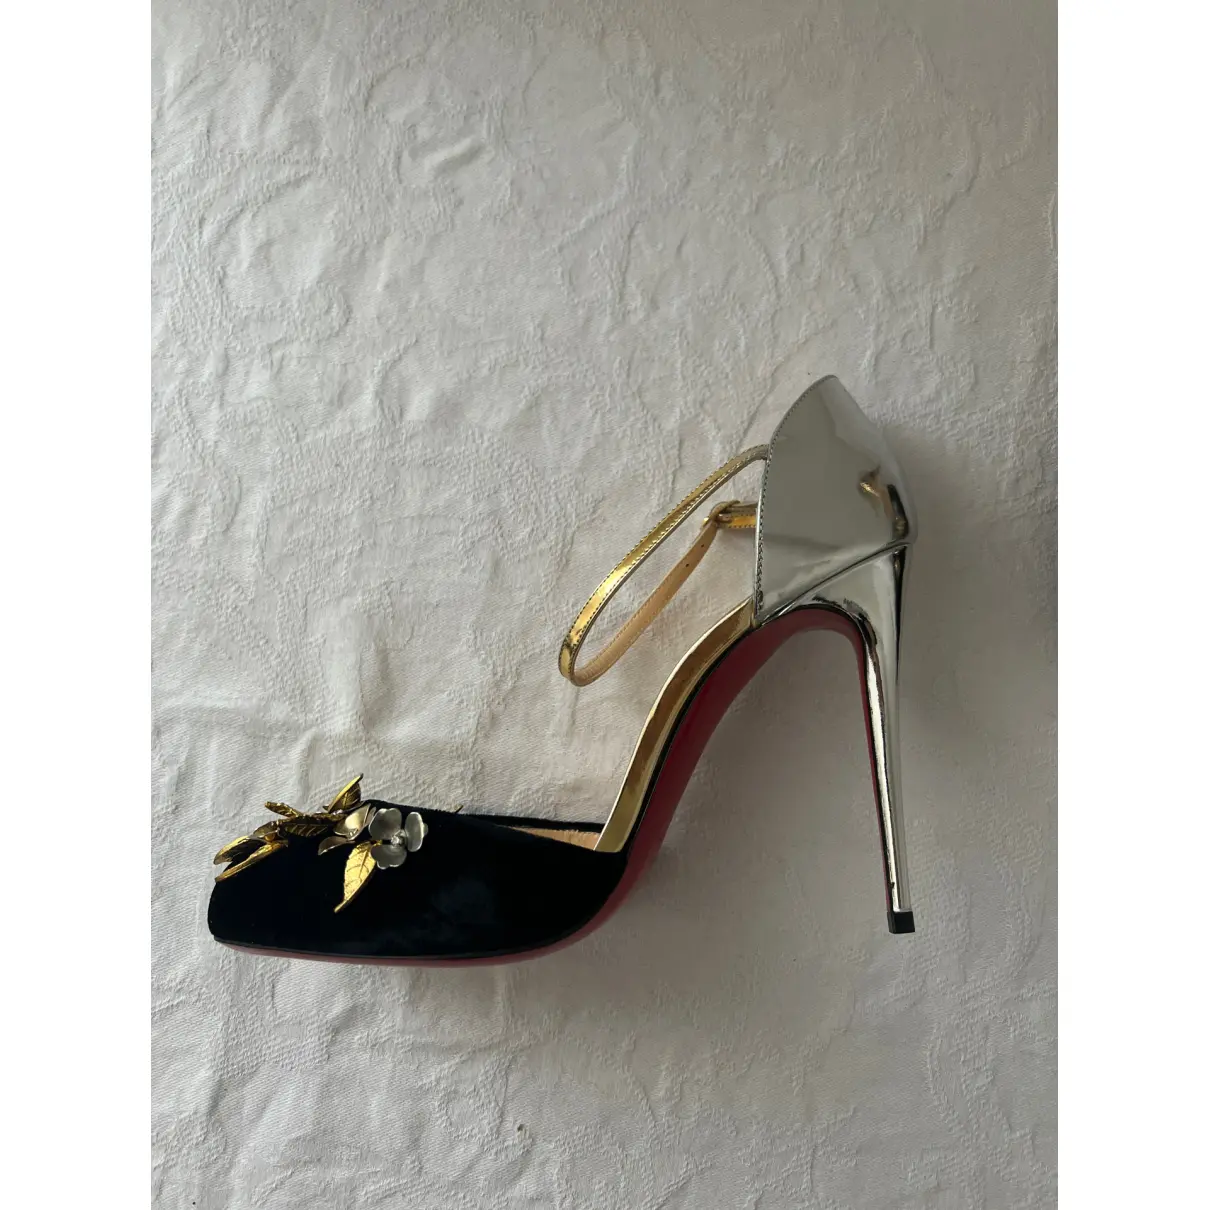 Buy Christian Louboutin Velvet heels online